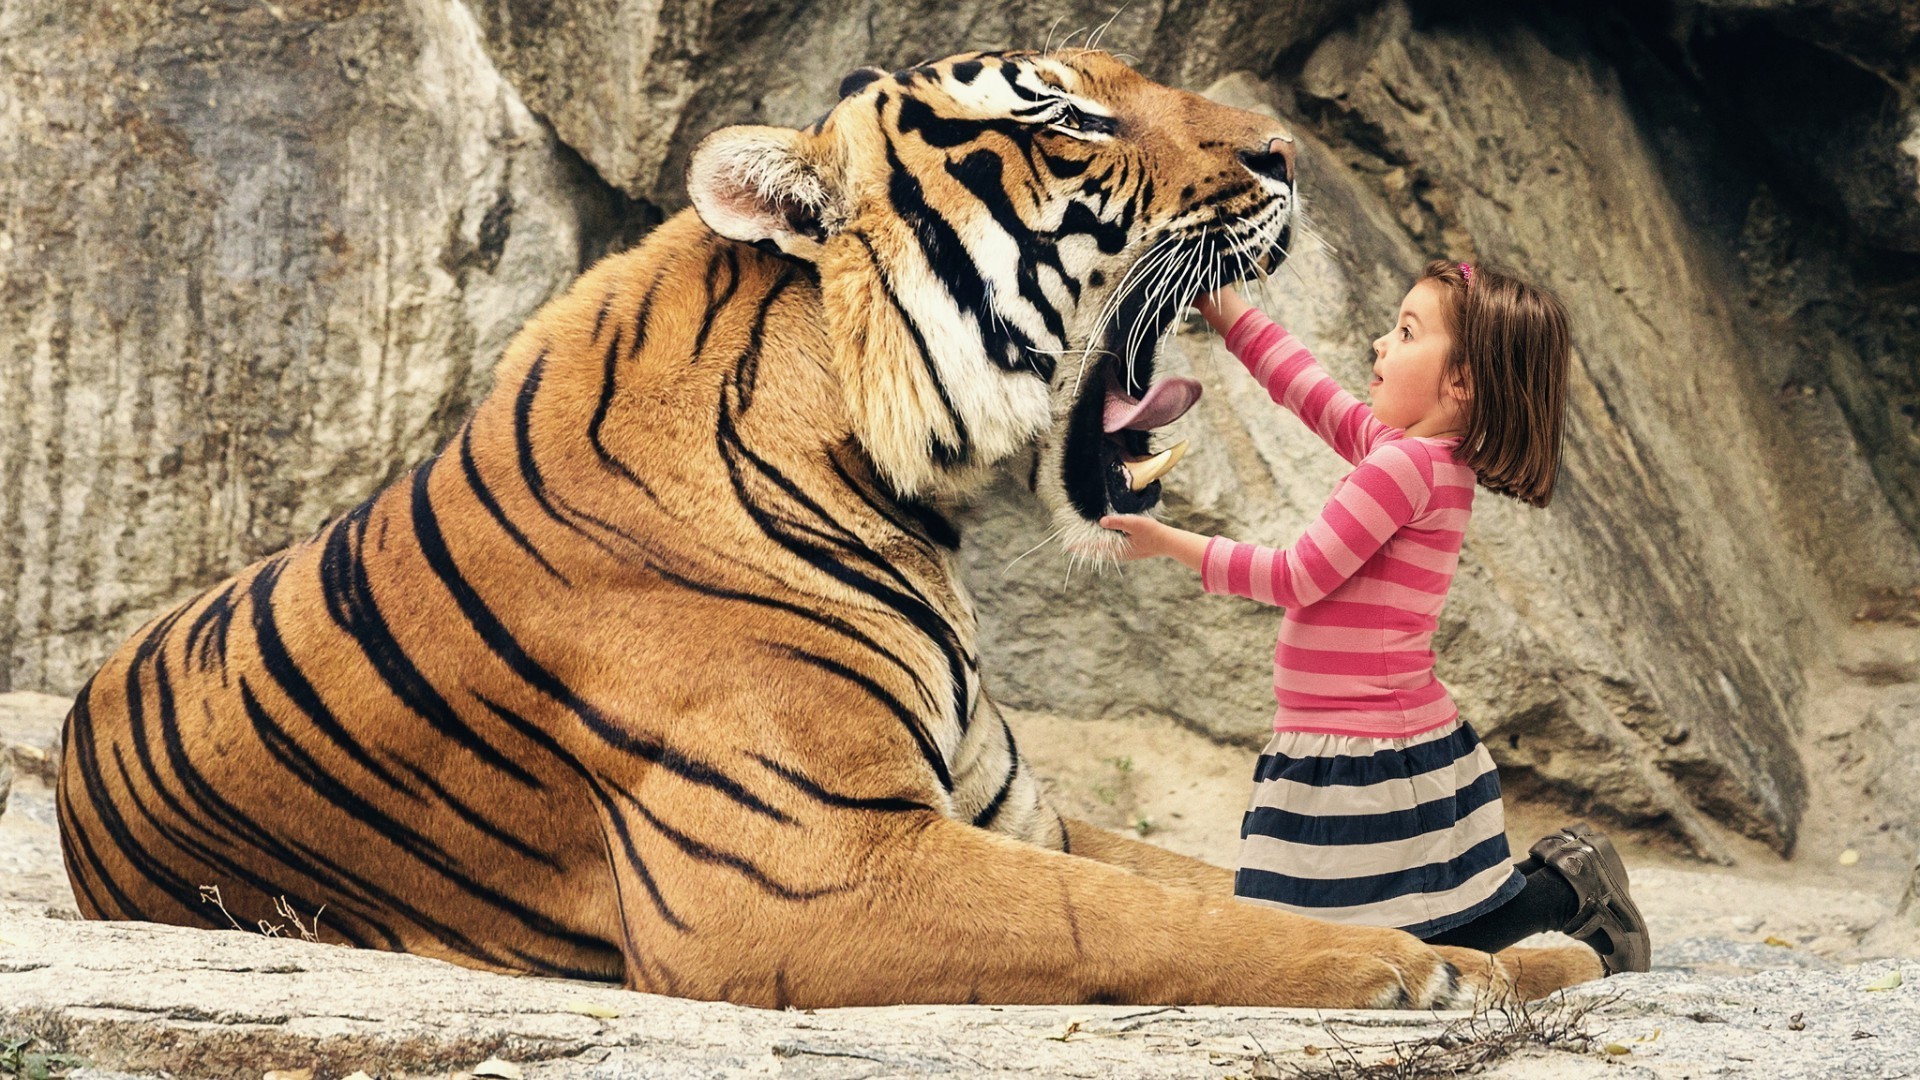 дети с животными тигр зоопарк кошка дикой природы животное млекопитающее большой природа дикий портрет полоса опасность сафари глава джунгли хищник охотник